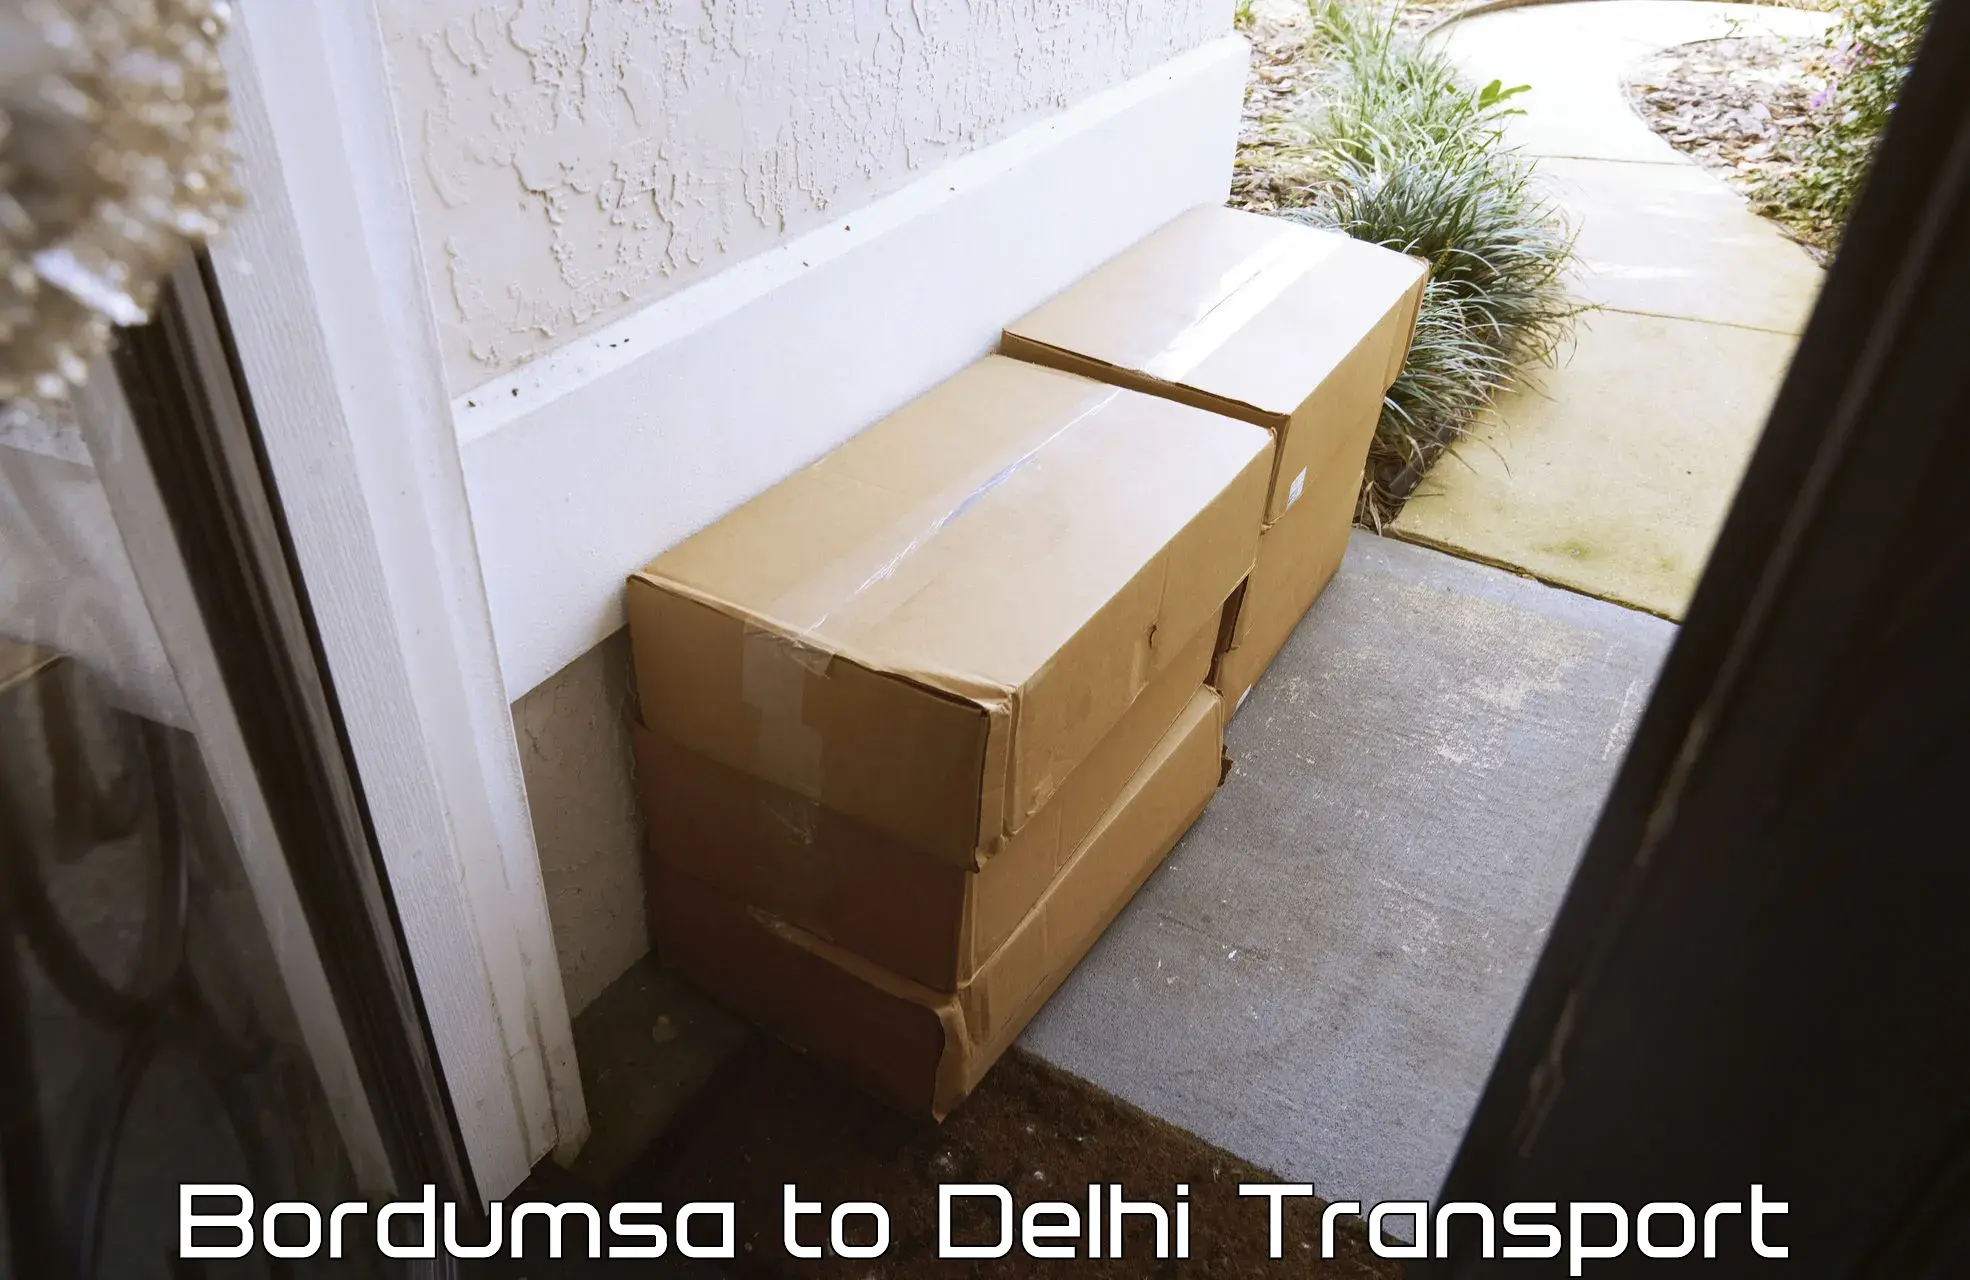 Container transport service Bordumsa to Delhi